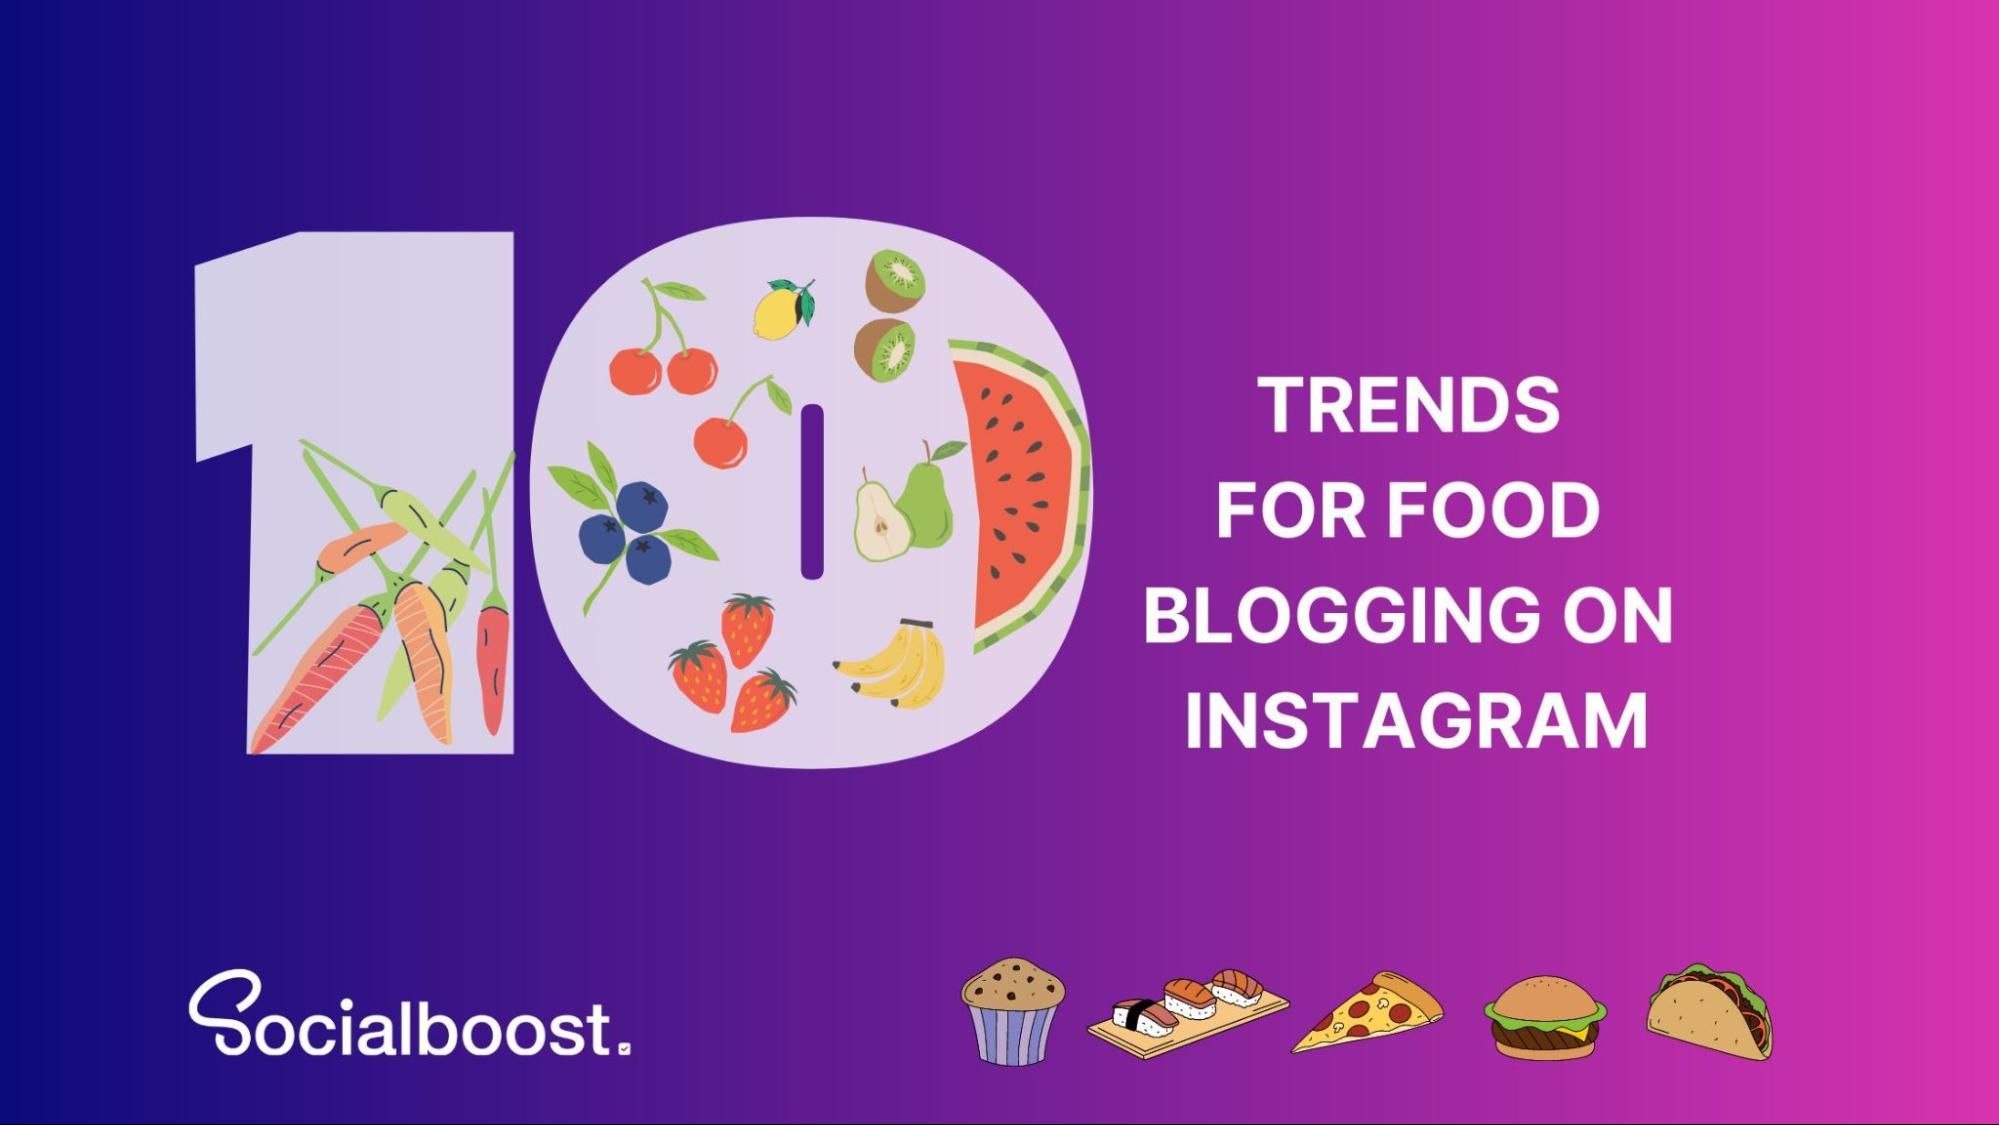 10 Trends For Food Blogging On Instagram